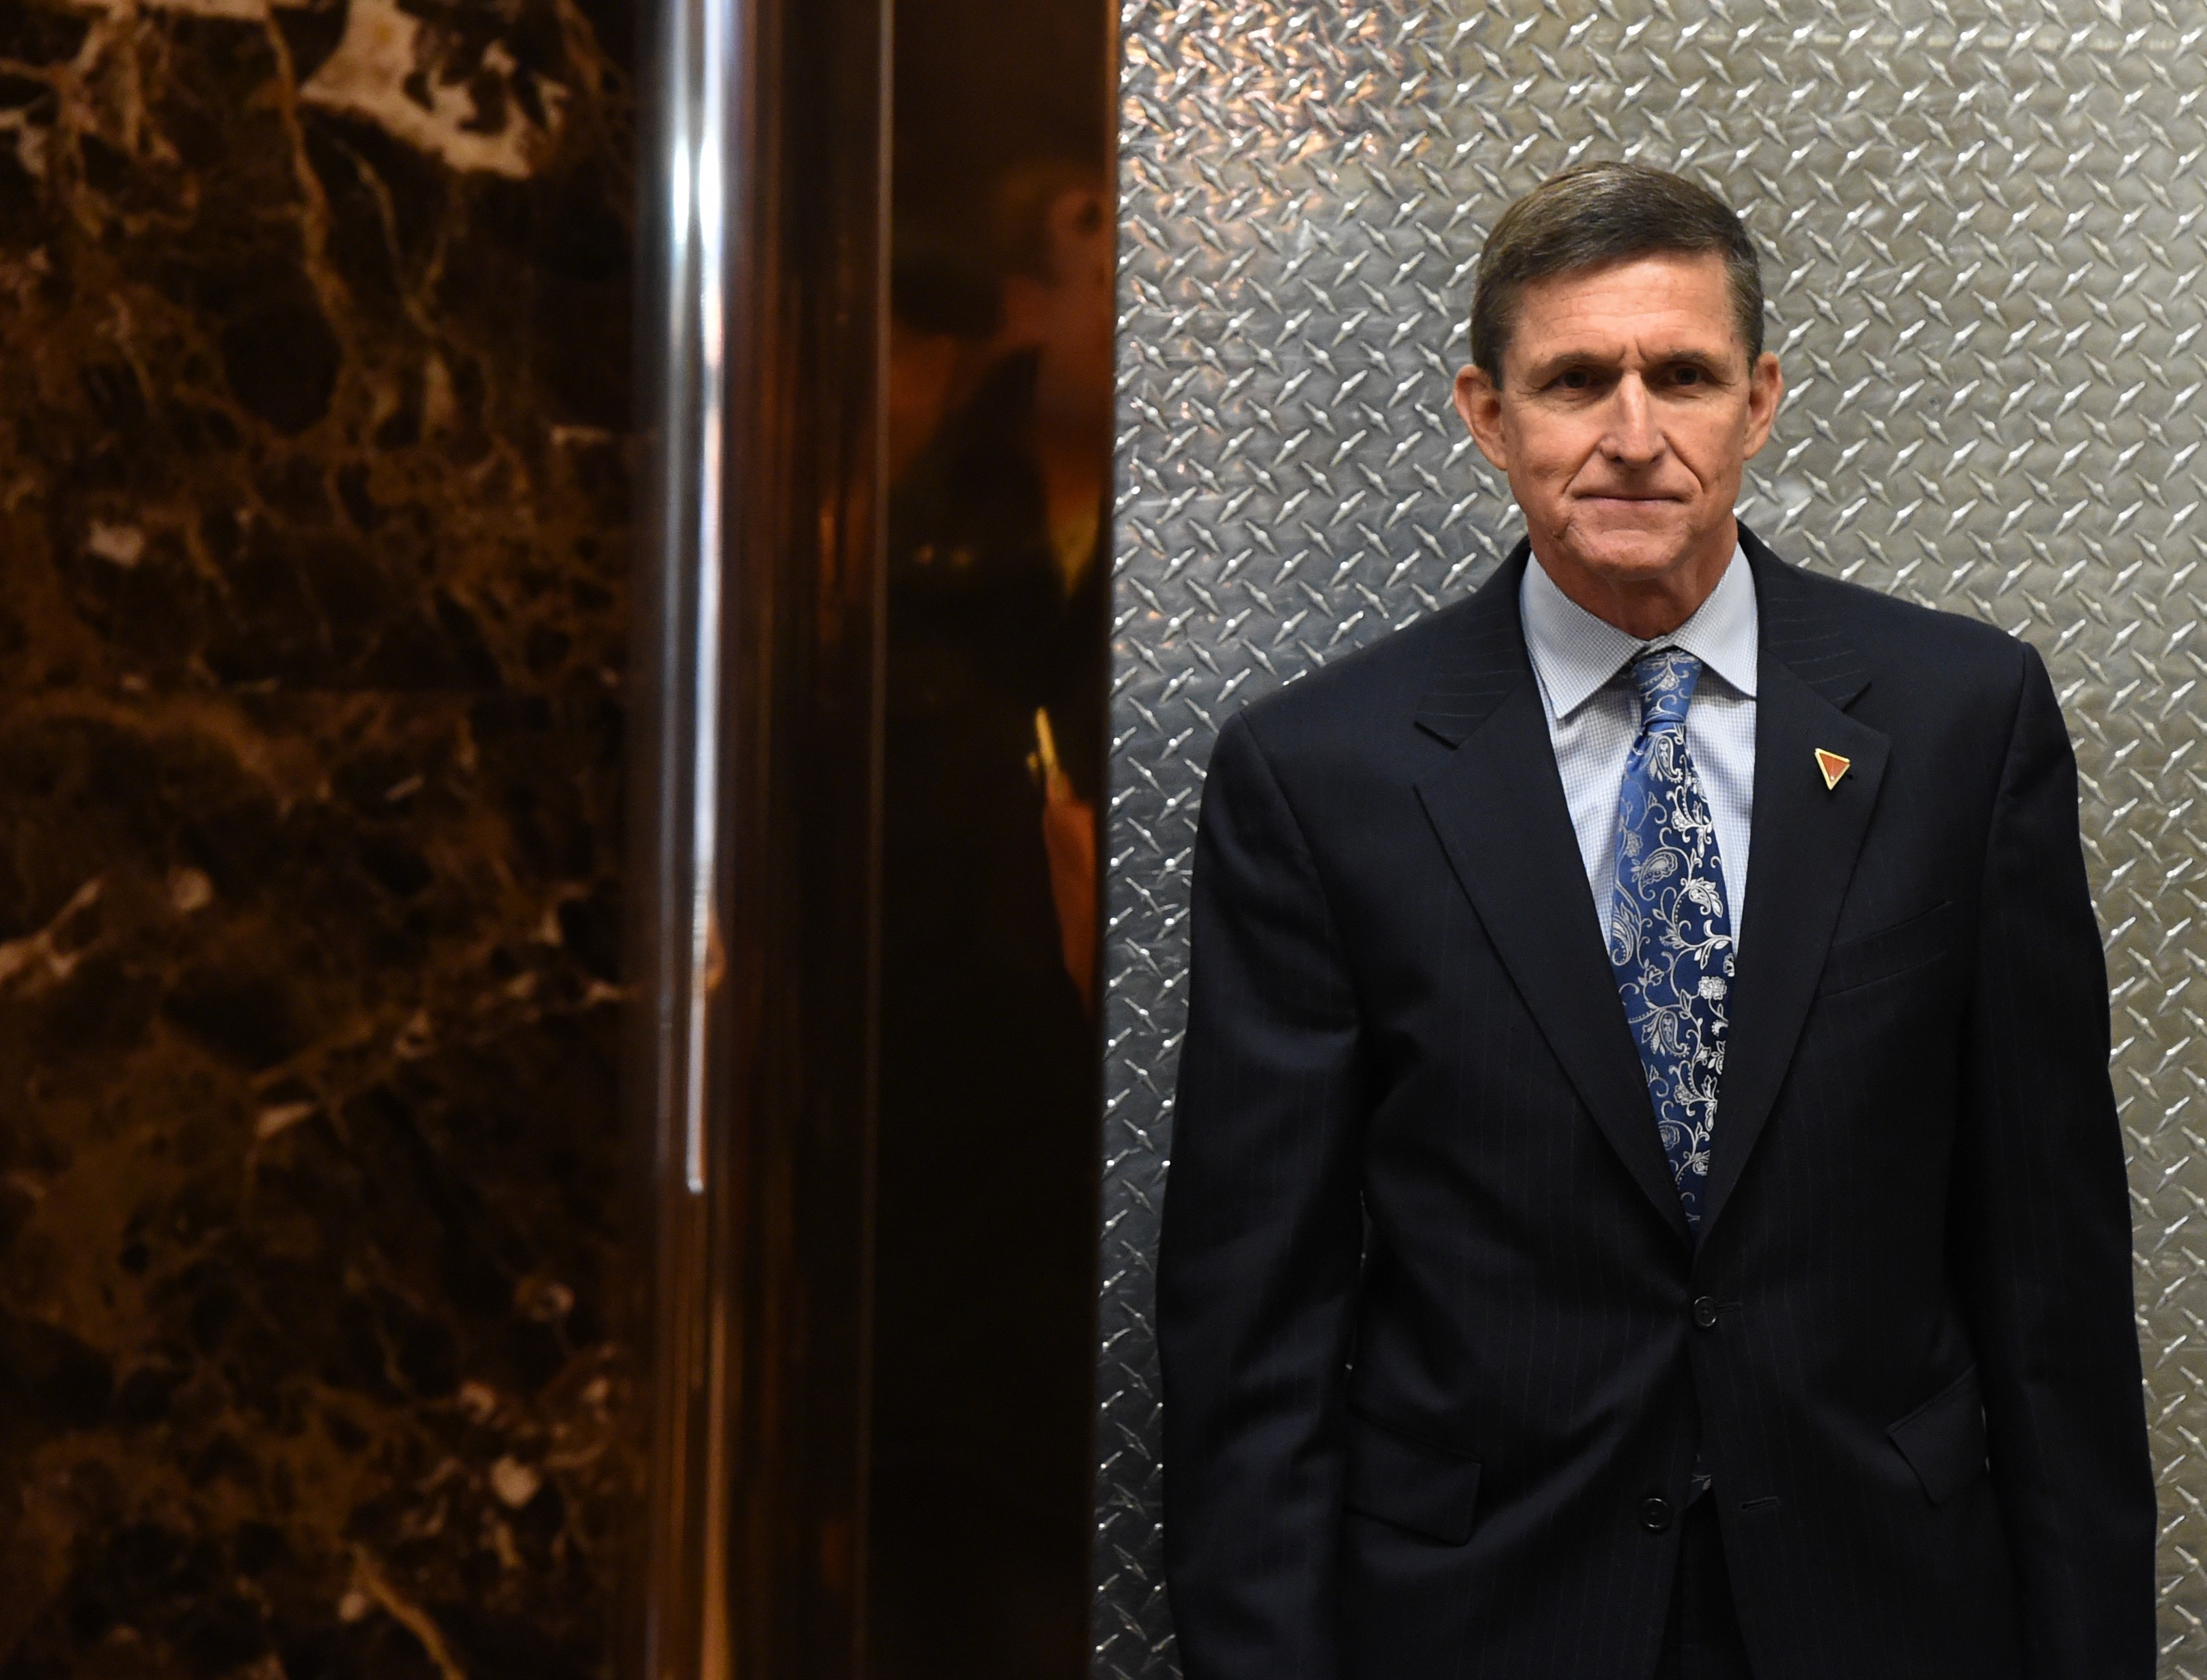 Anklage gegen Trumps Ex-Sicherheitsberater Michael Flynn